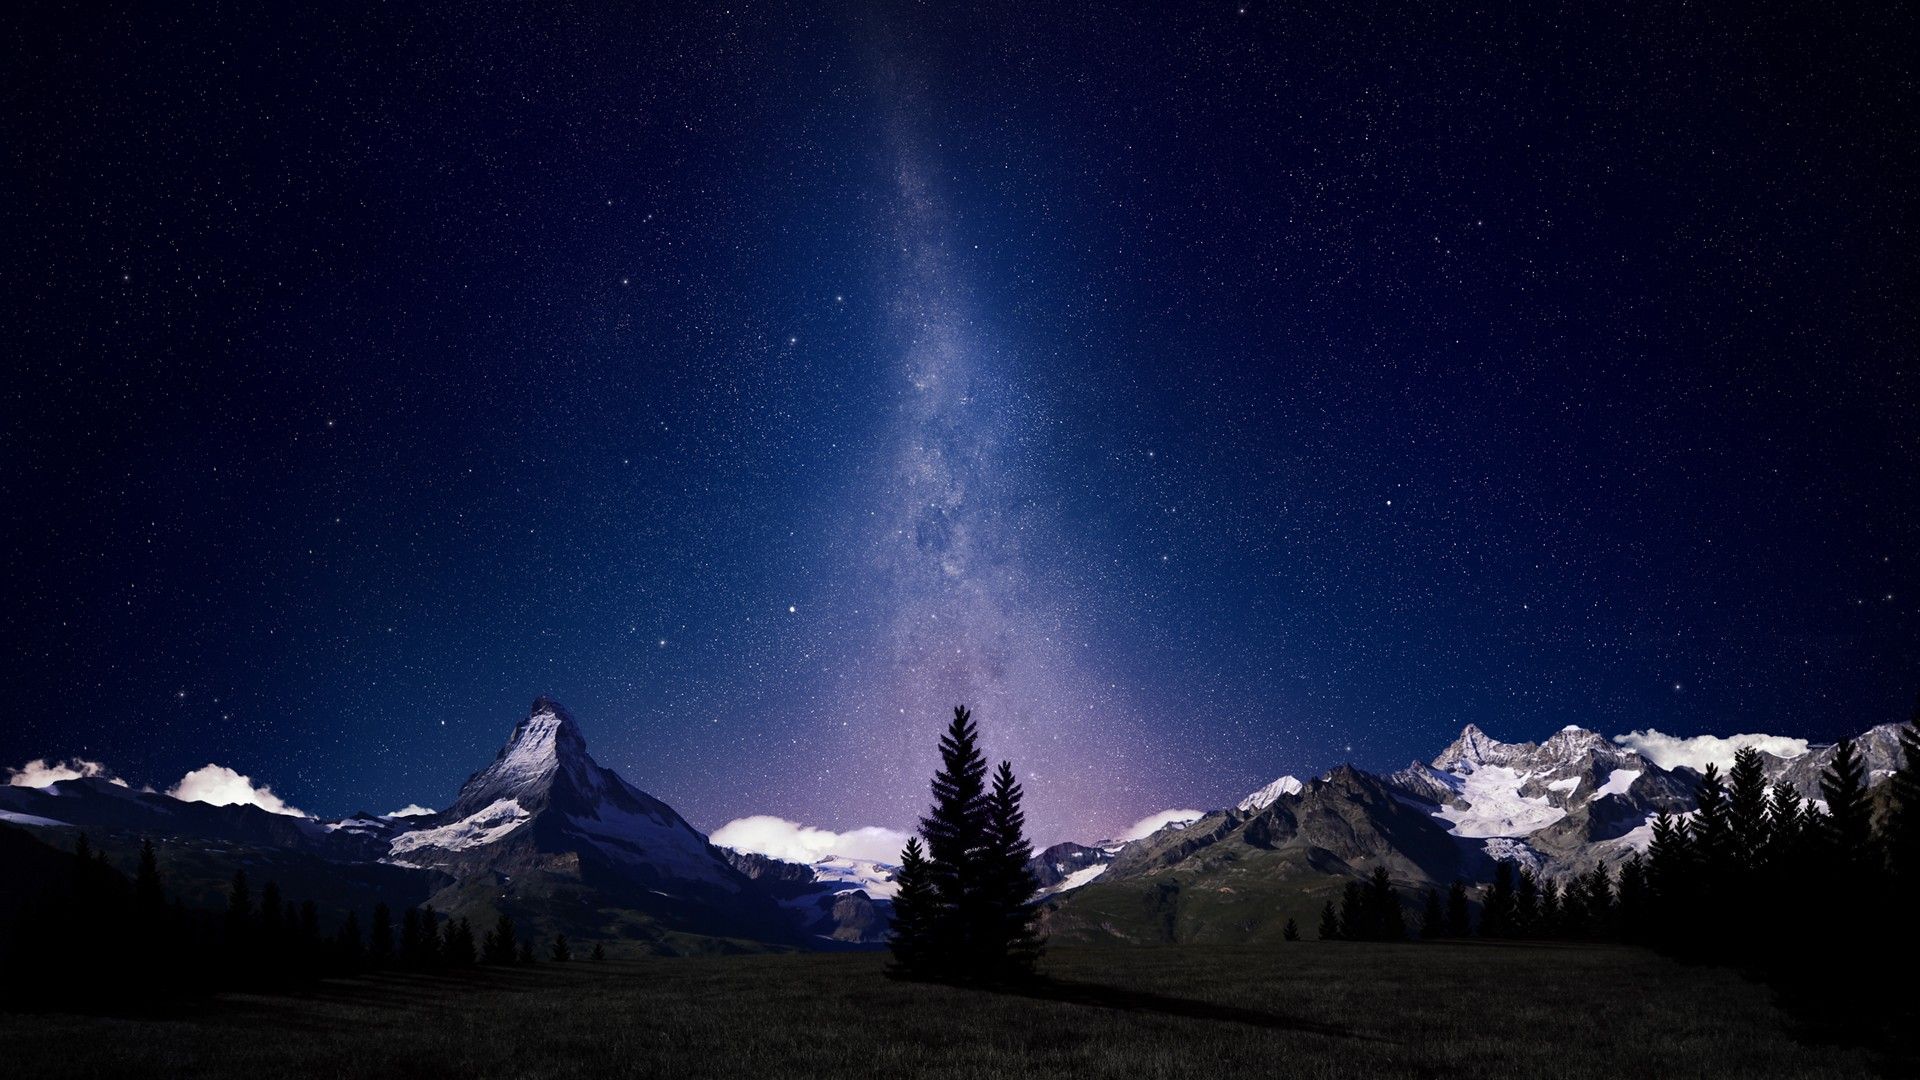 #stars, #mountains, #landscape, #Matterhorn, #space